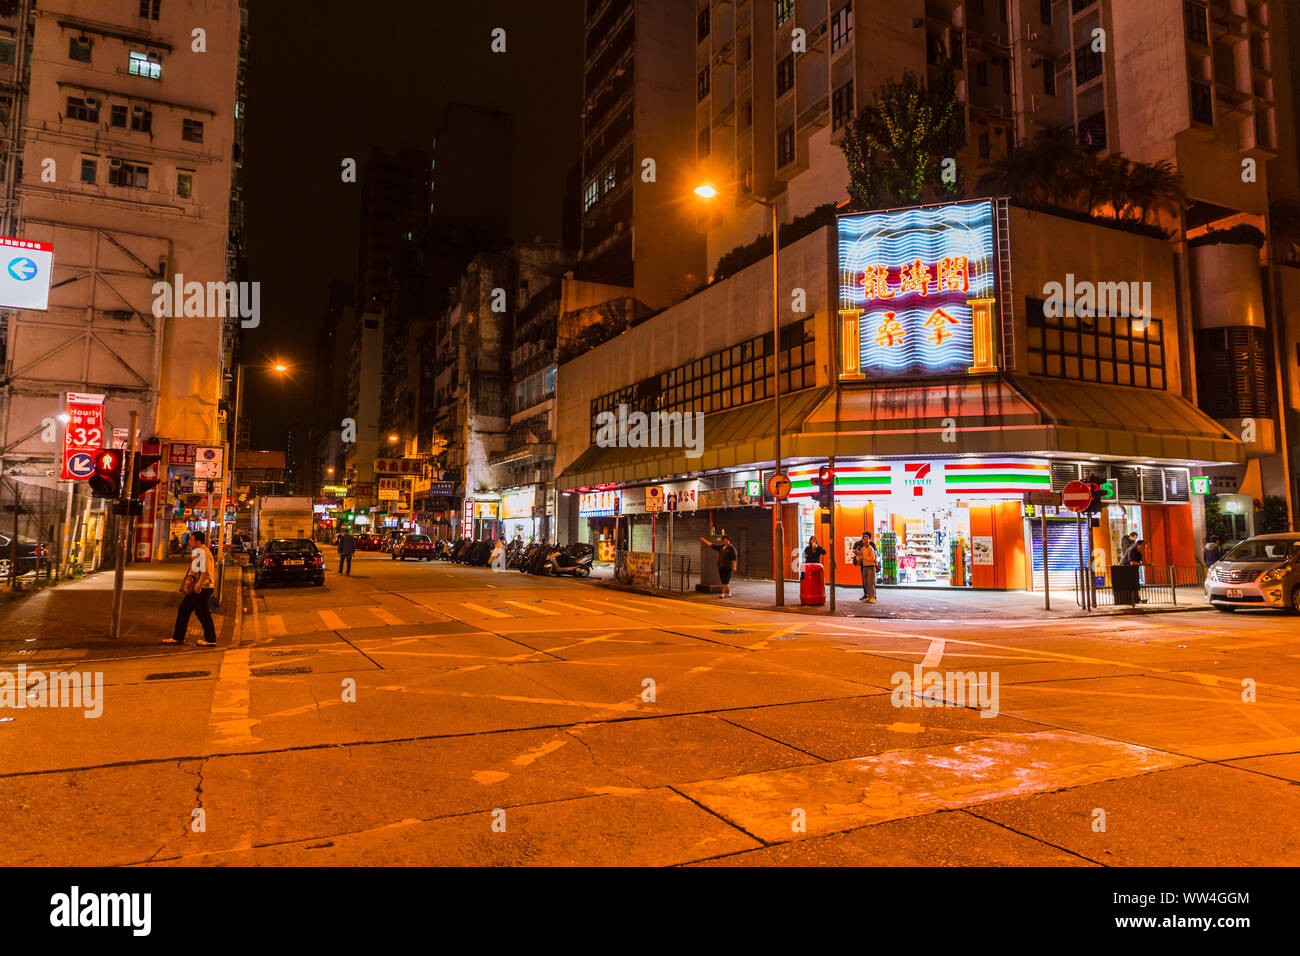 Hong Kong night street Road reisen Sehenswürdigkeiten in Mongkok ablenken ruhig keine Touristen und Reisenden. 24. November 2017. Stockfoto